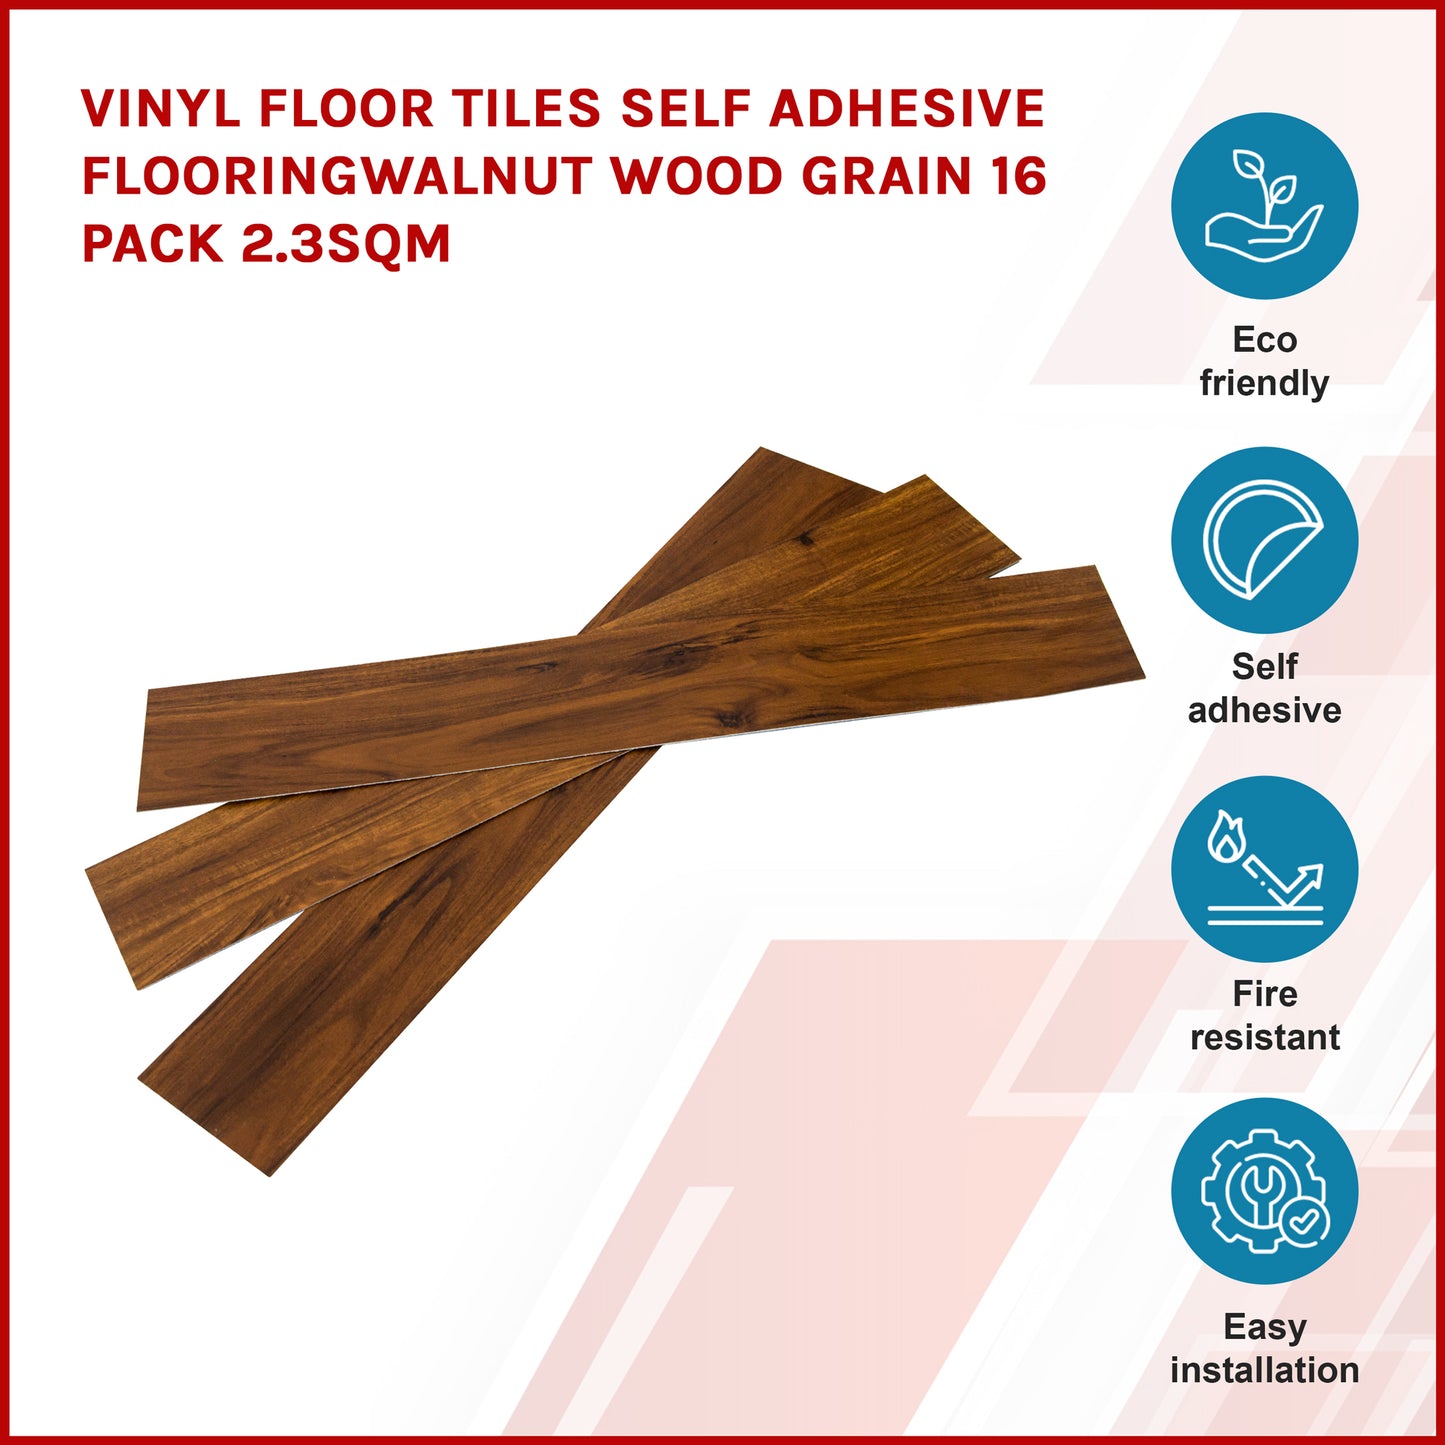 Vinyl Floor Tiles Self Adhesive Flooring Walnut Wood Grain 16 Pack 2.3SQM - image3